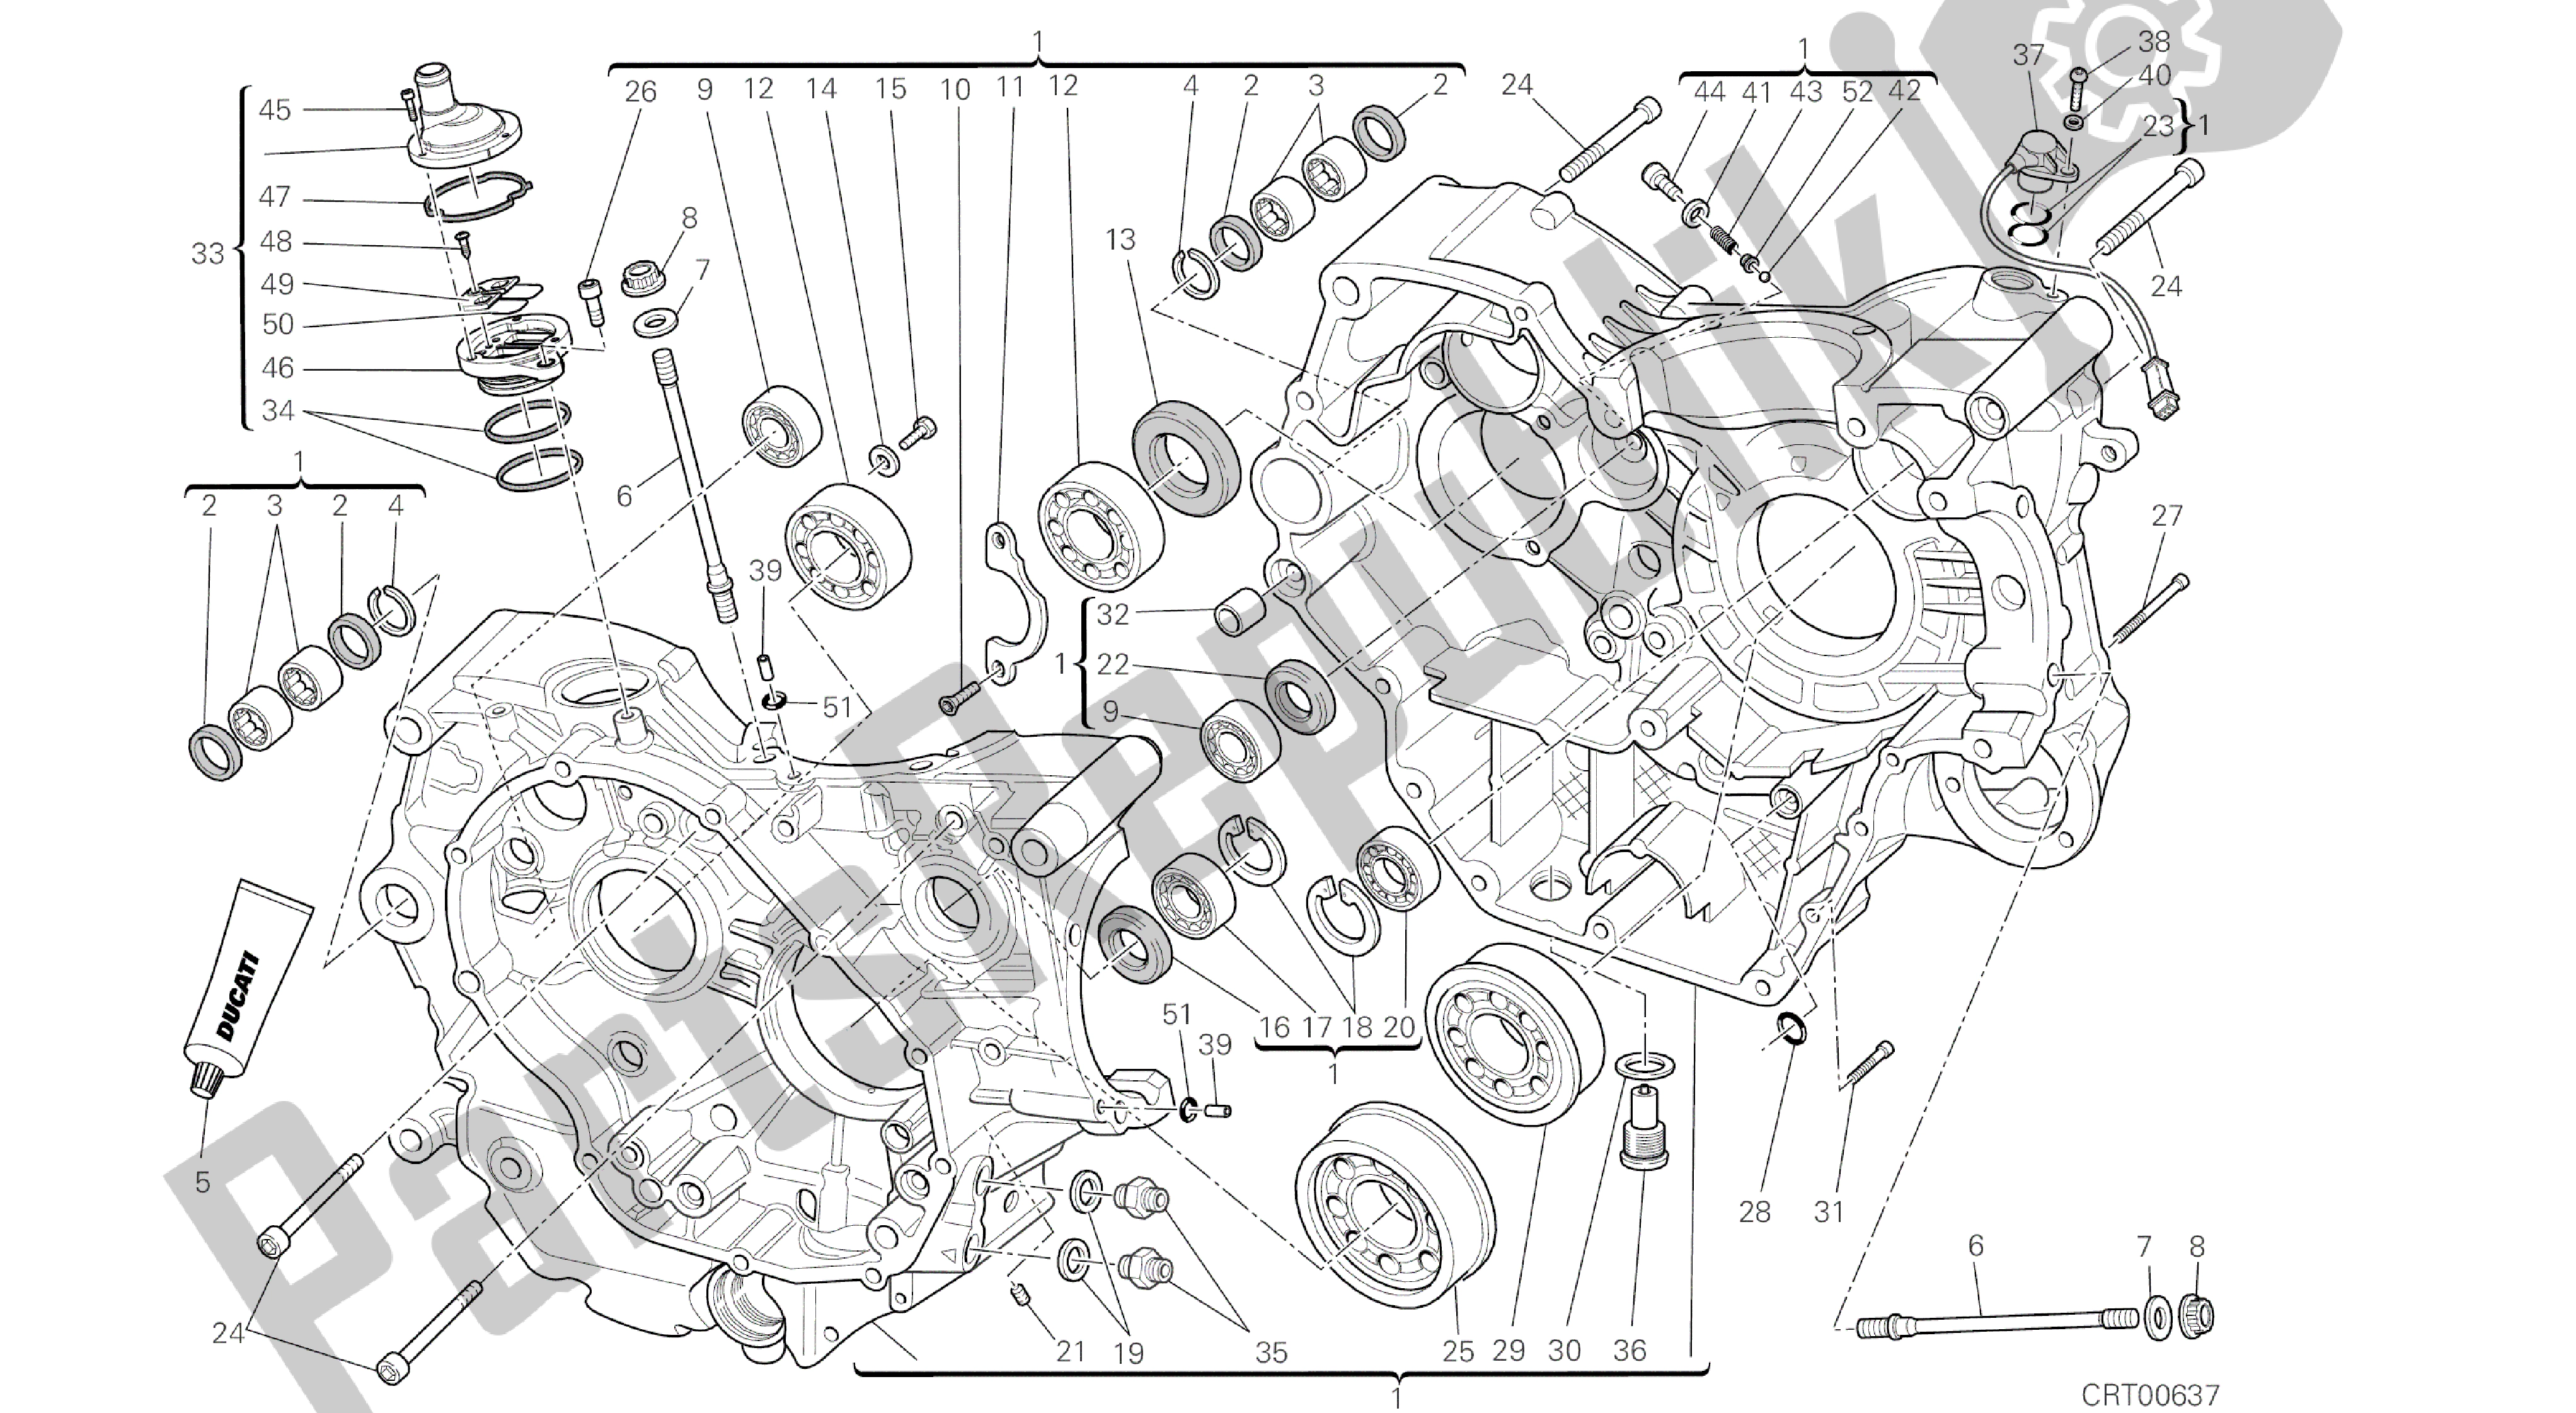 Alle onderdelen voor de Tekening 010 - Carter [mod: M796 Abs; Xst: Aus, Bra, Eur, Jap, Twn] Groepsmotor van de Ducati Monster ABS 796 2014